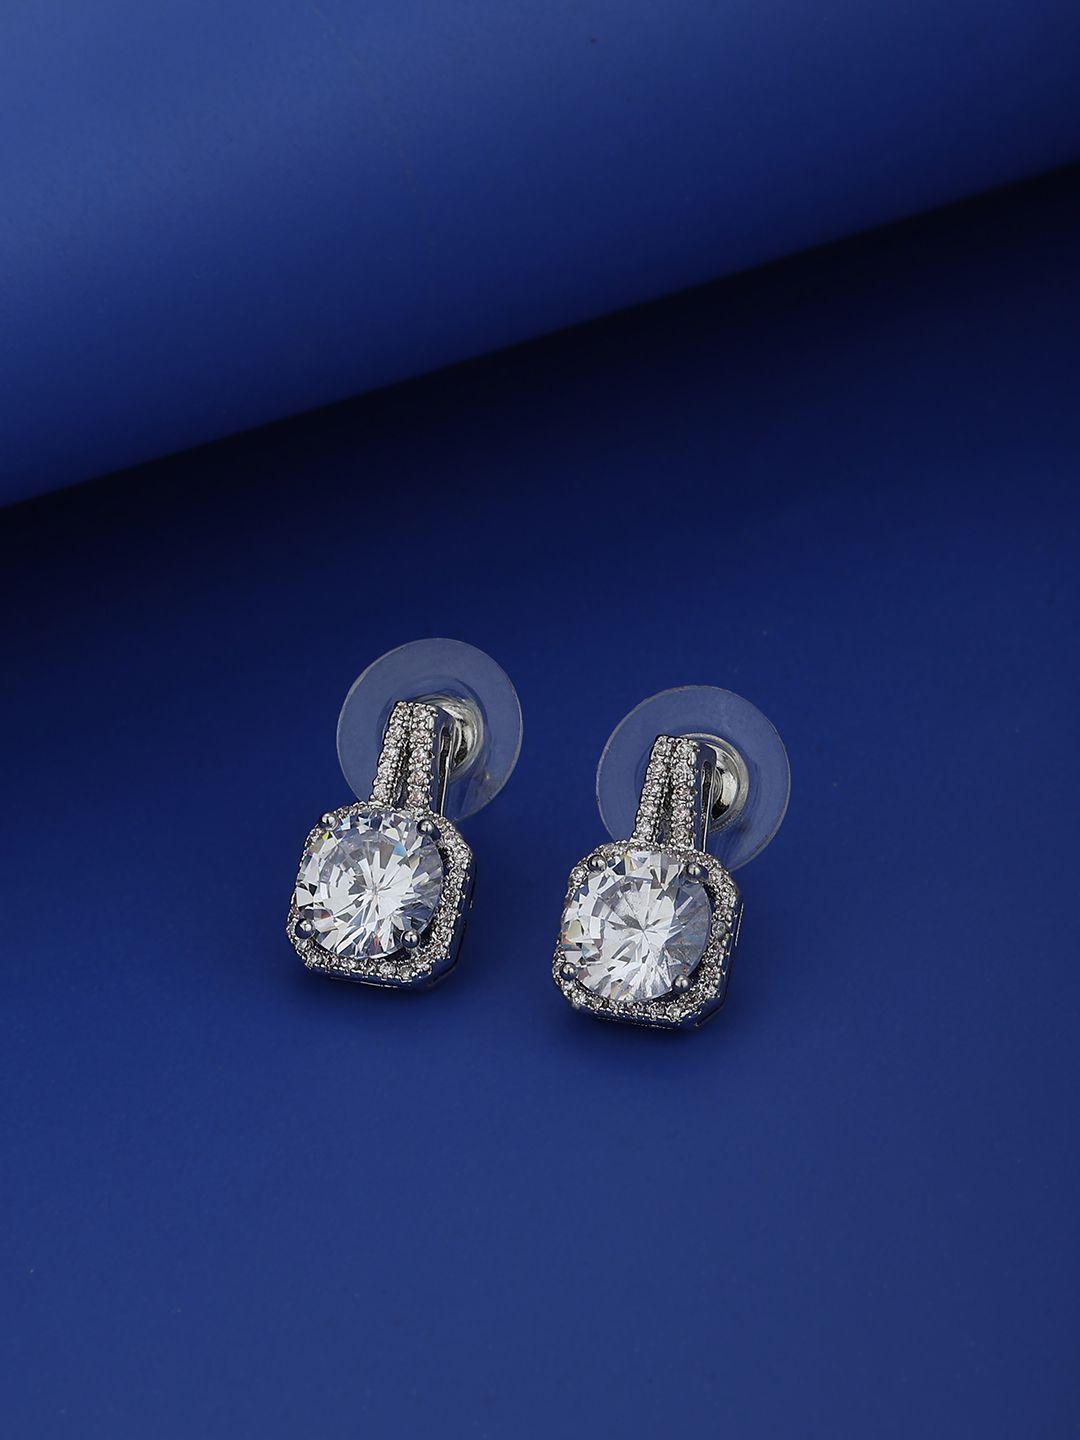 carlton london women  silver-toned diamond shaped studs earrings